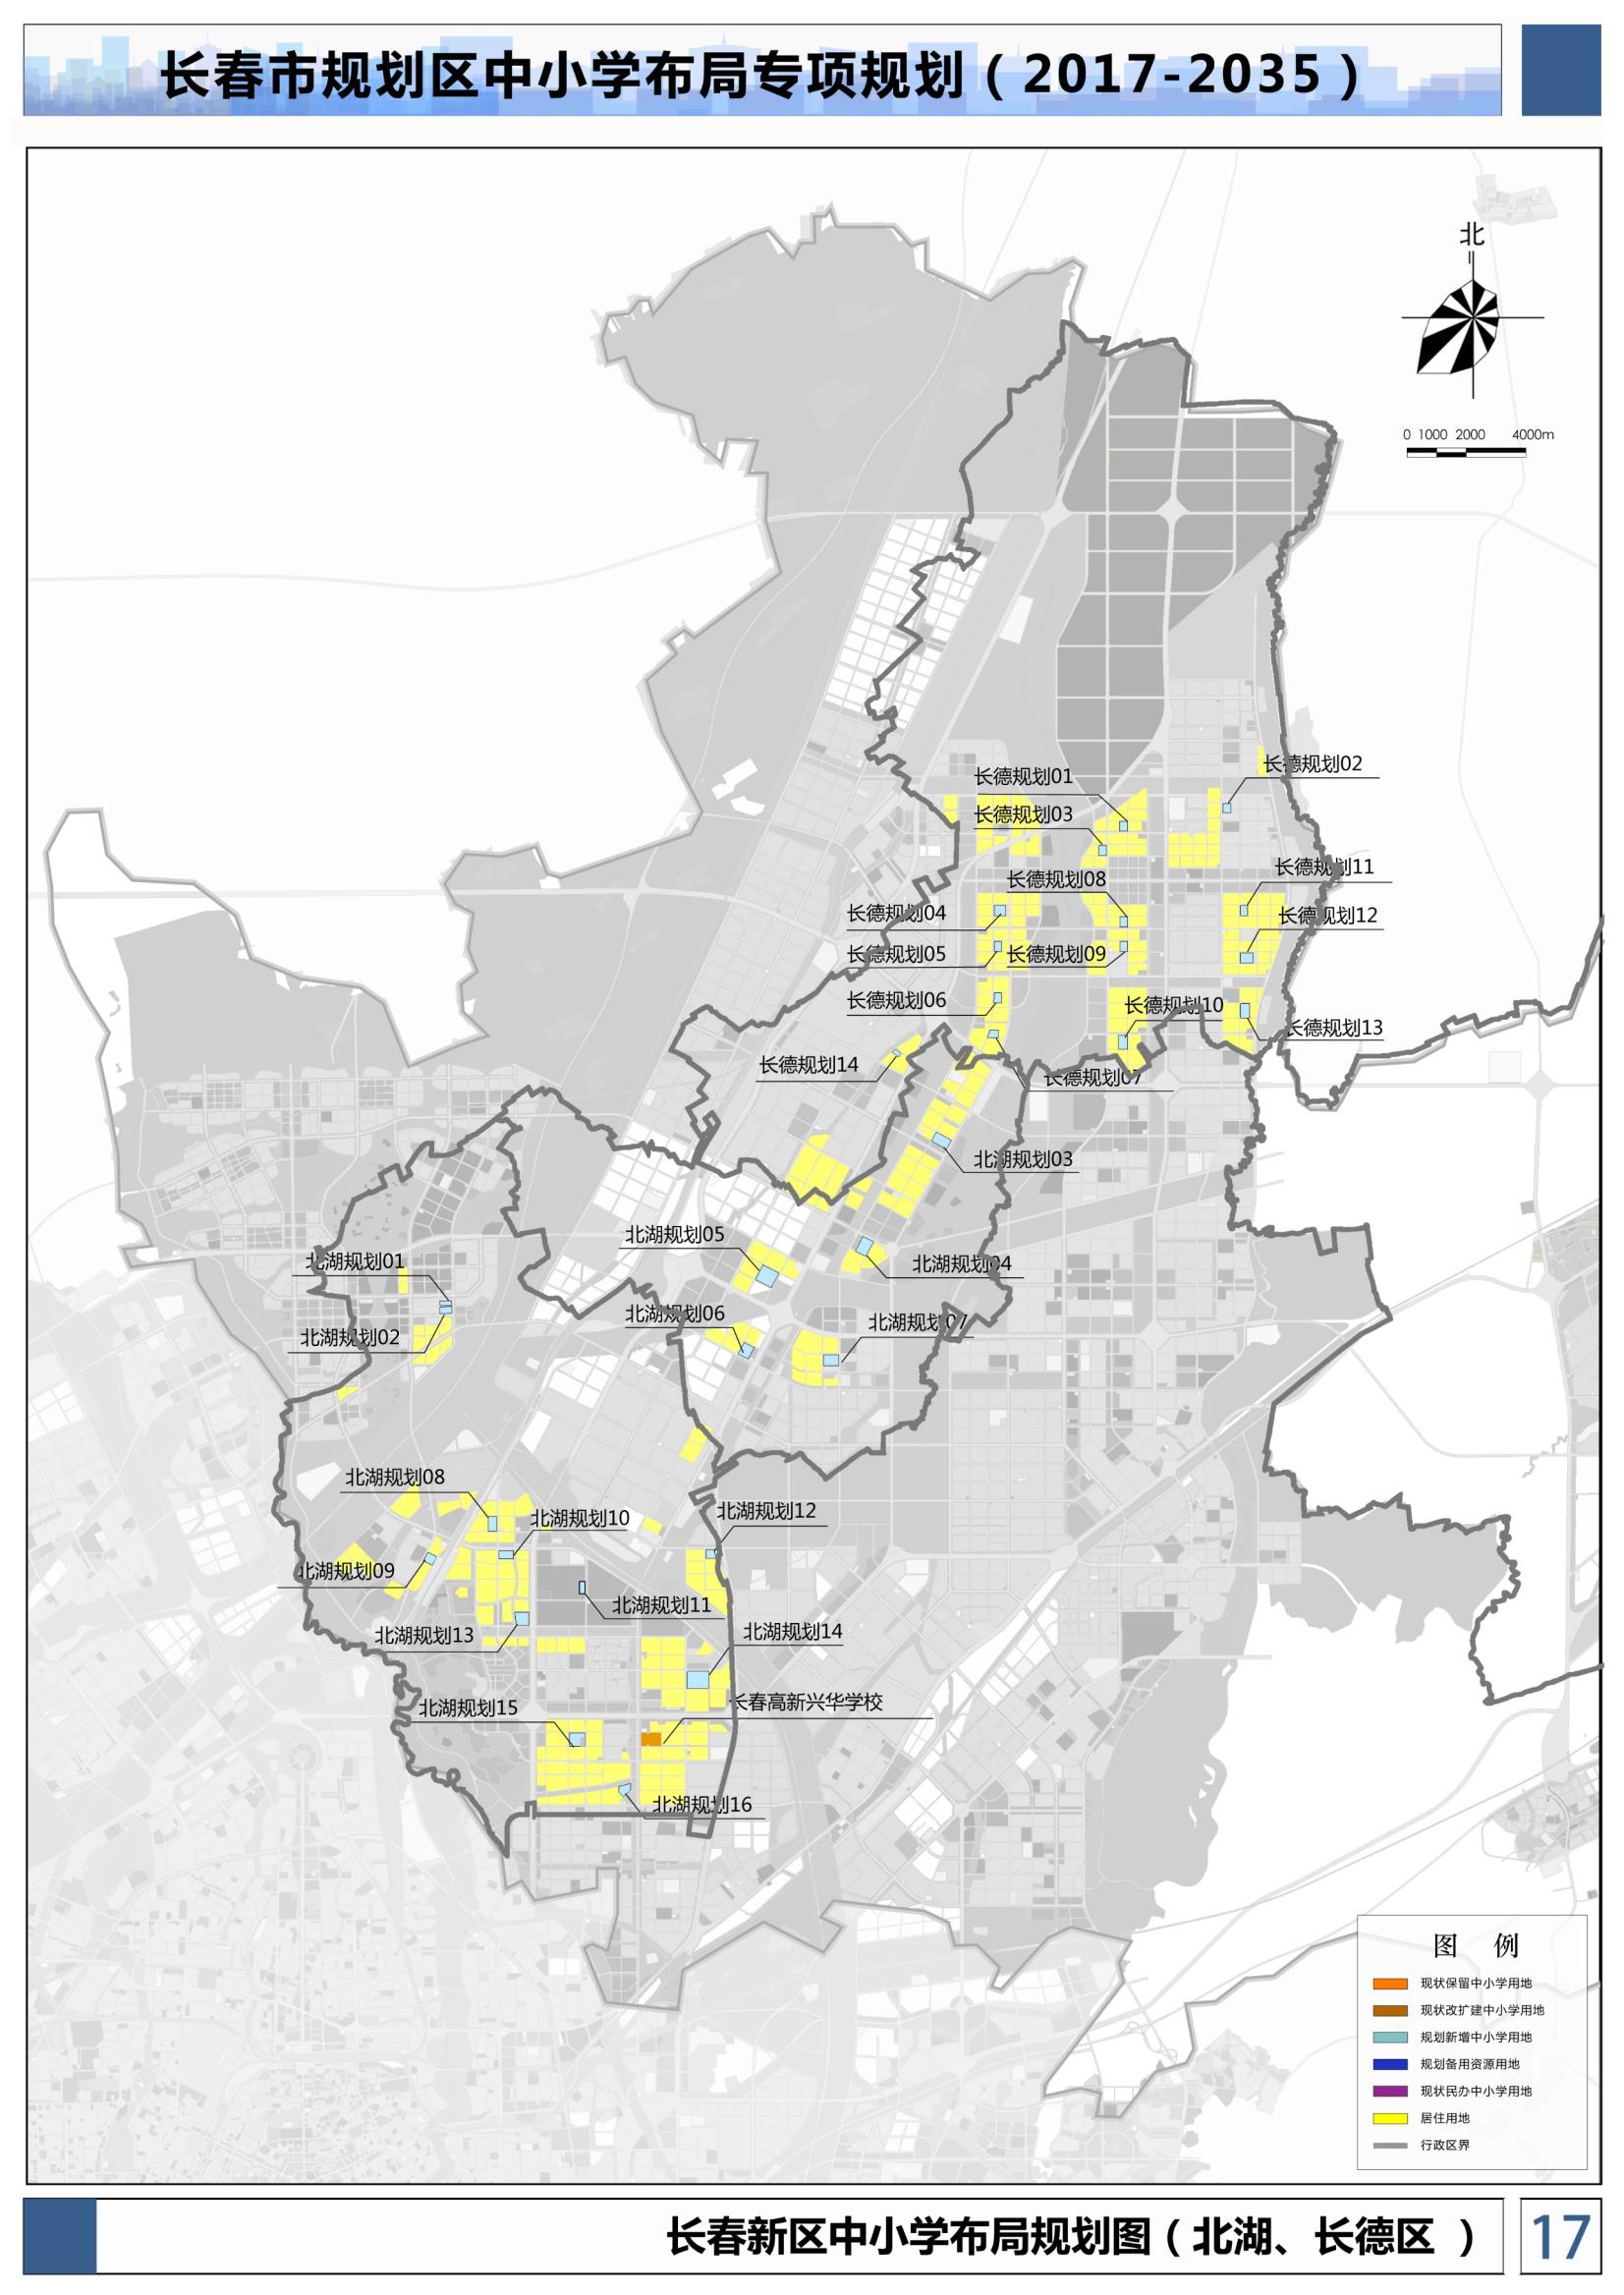 长春市规划北湖,长德区中小学布局专项规划图(2017